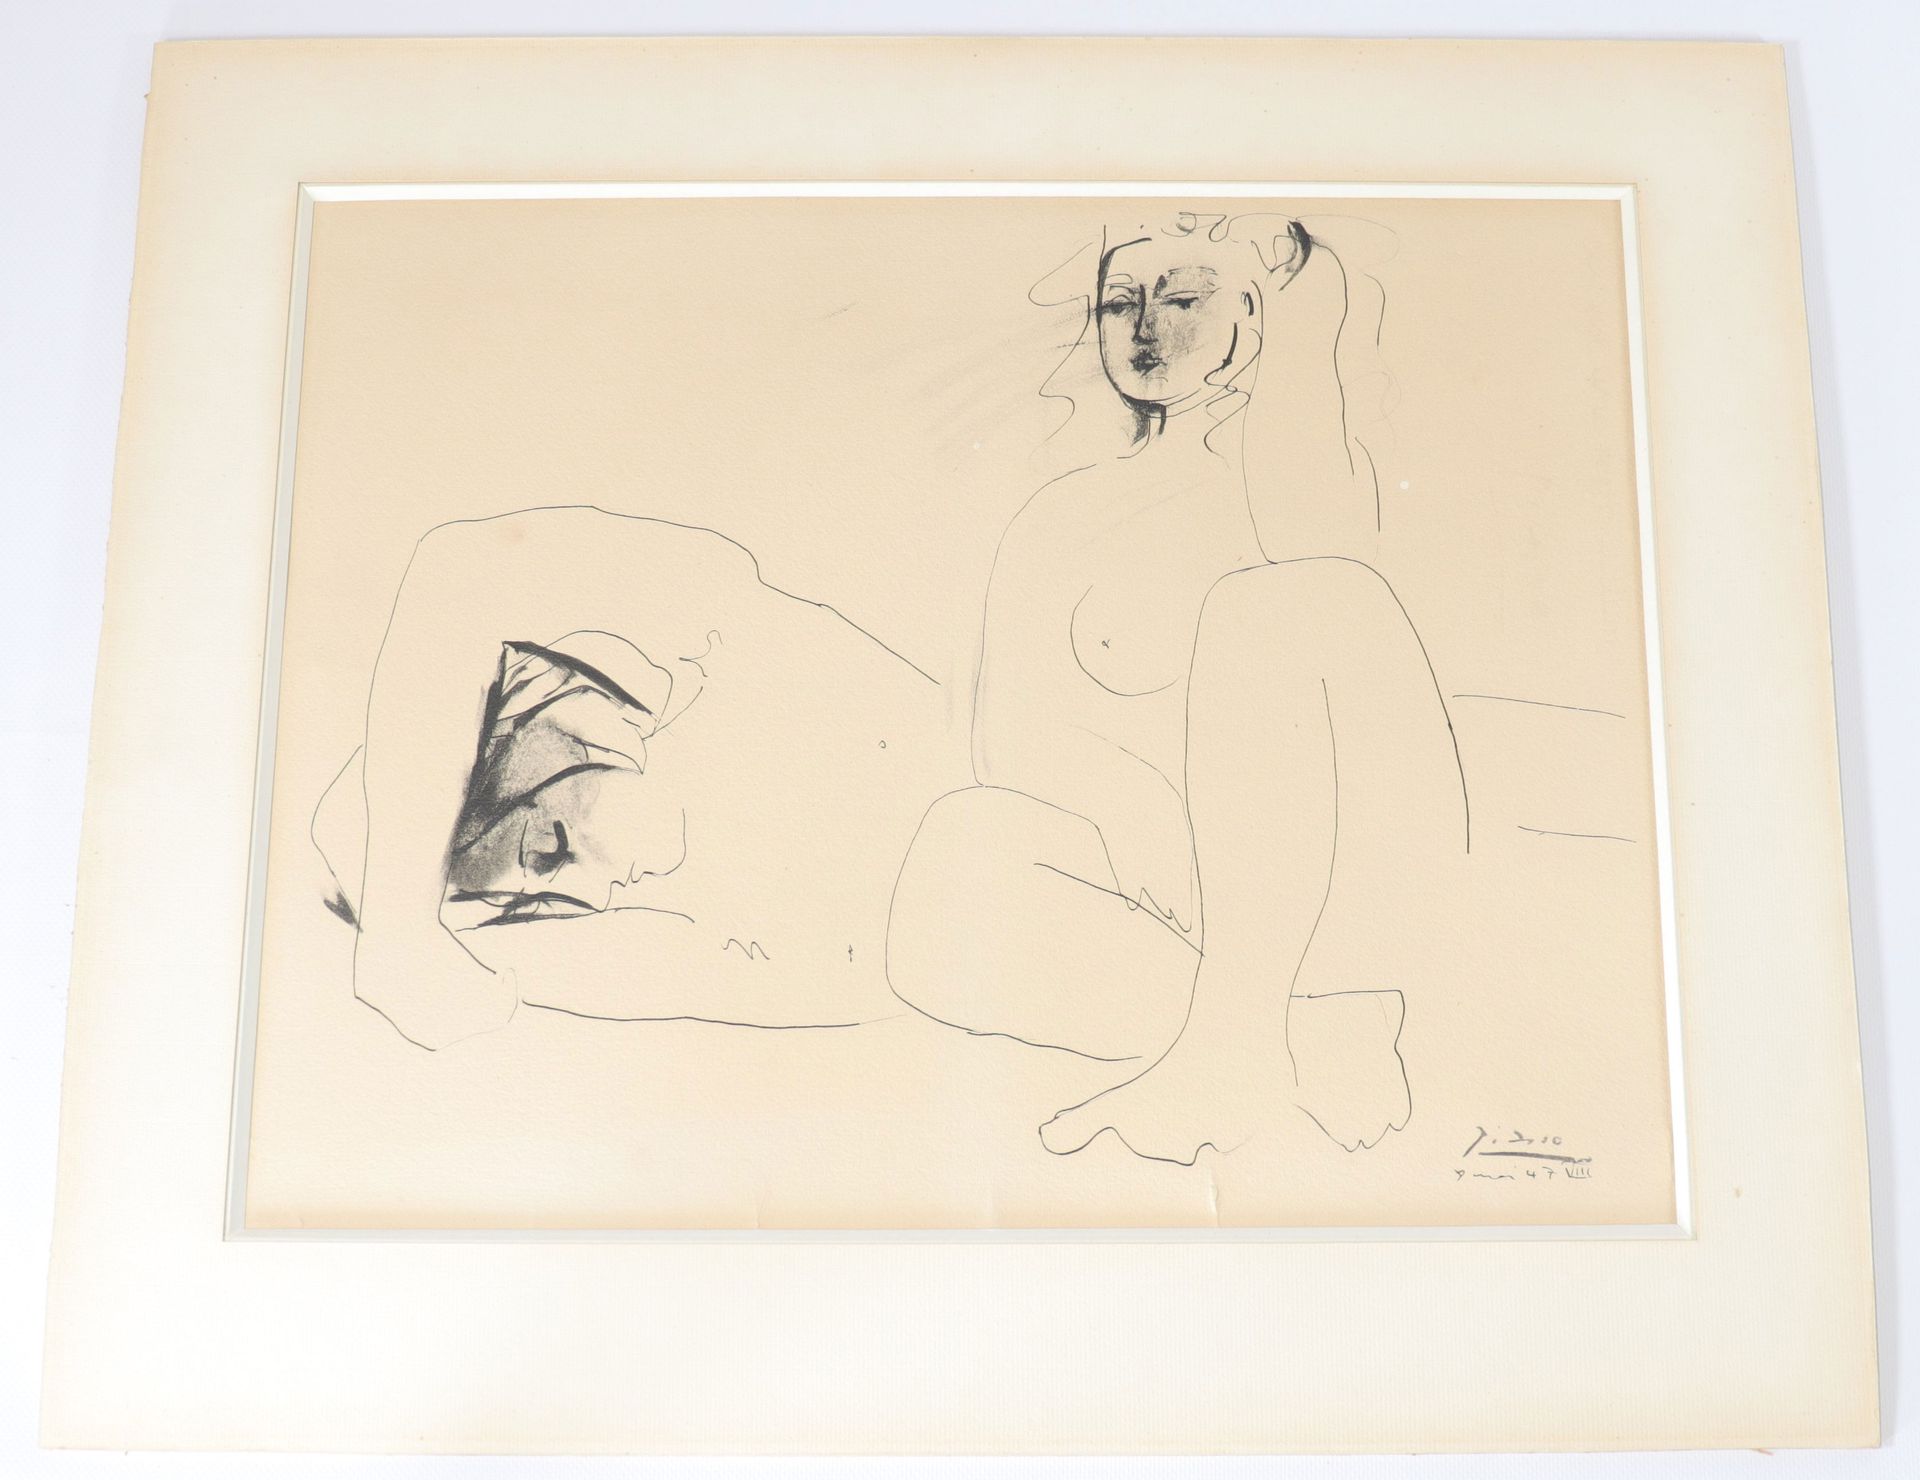 Pablo Picasso (1881-1973) – Le dormeur Pablo Picasso (1881-1973) - La Durmiente
&hellip;